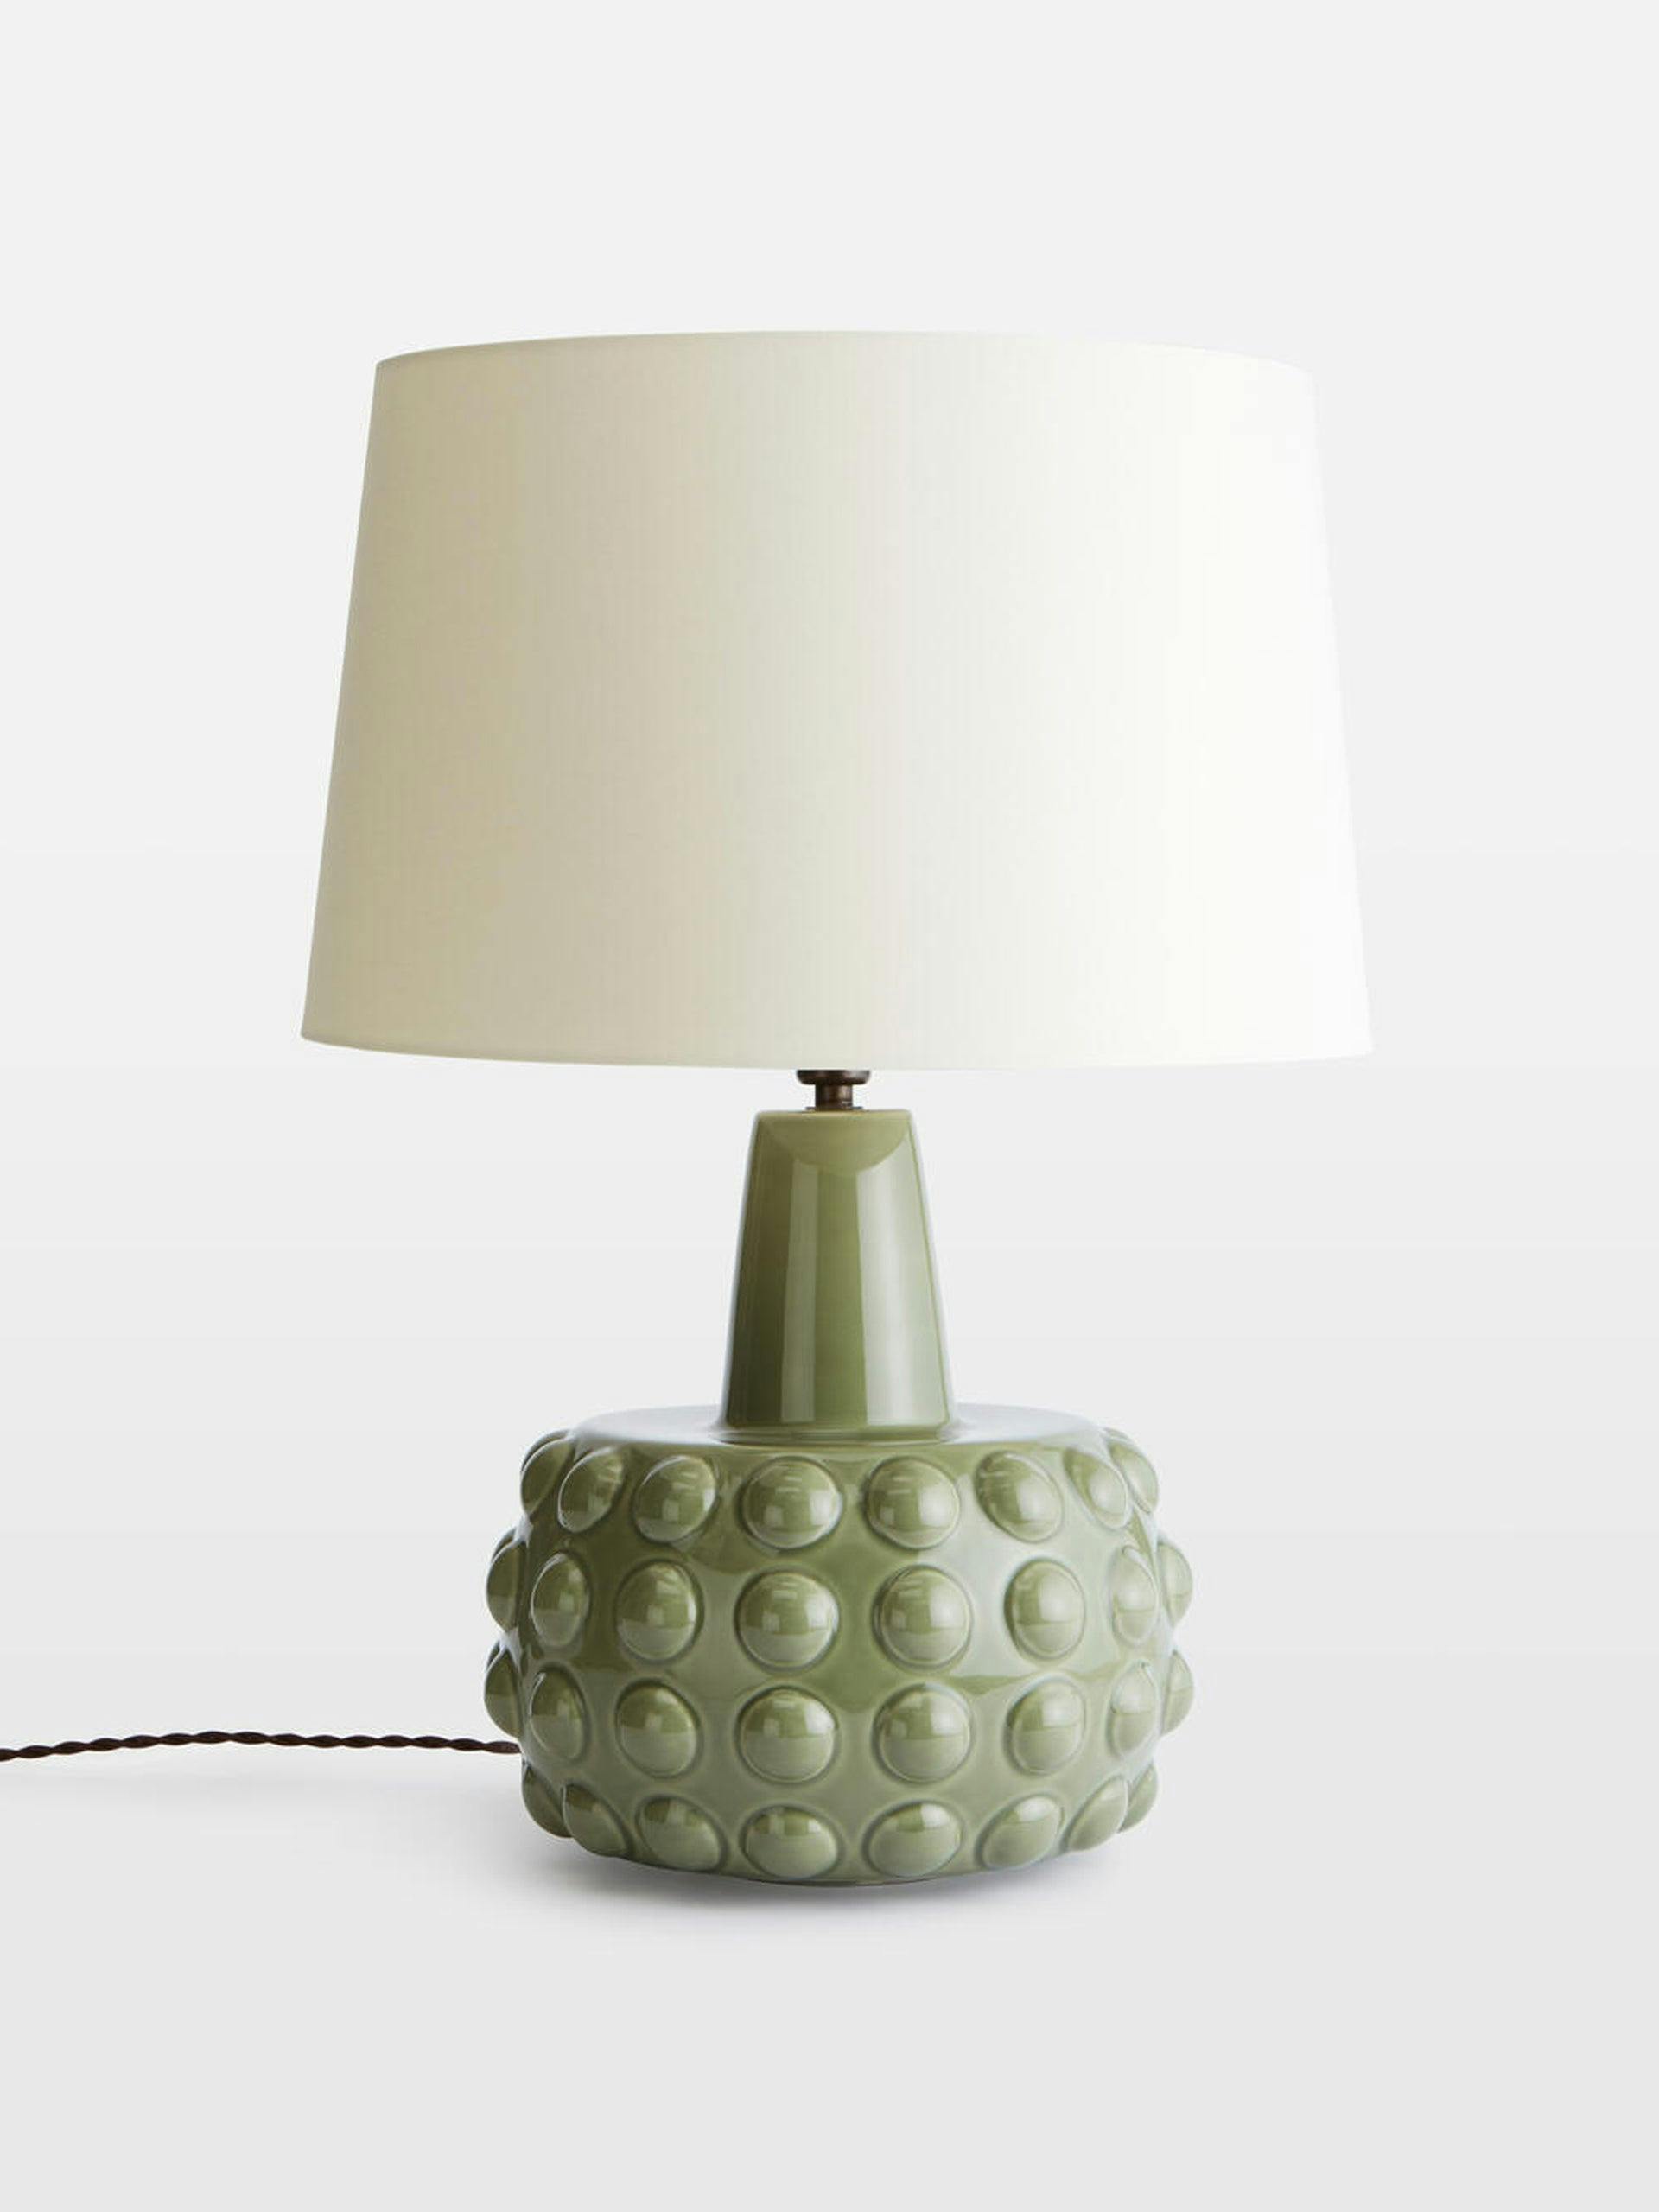 Green ceramic table lamp